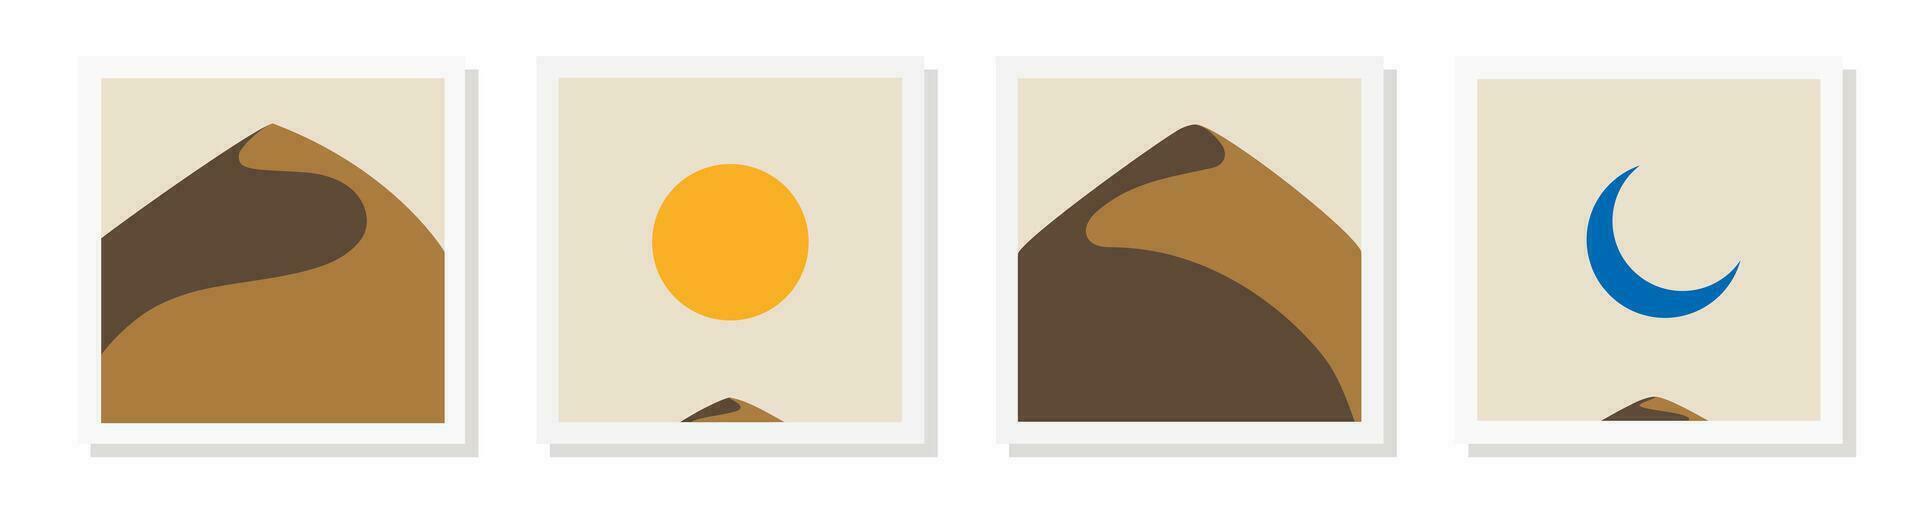 öken- landskap affisch uppsättning minimal stil vektor